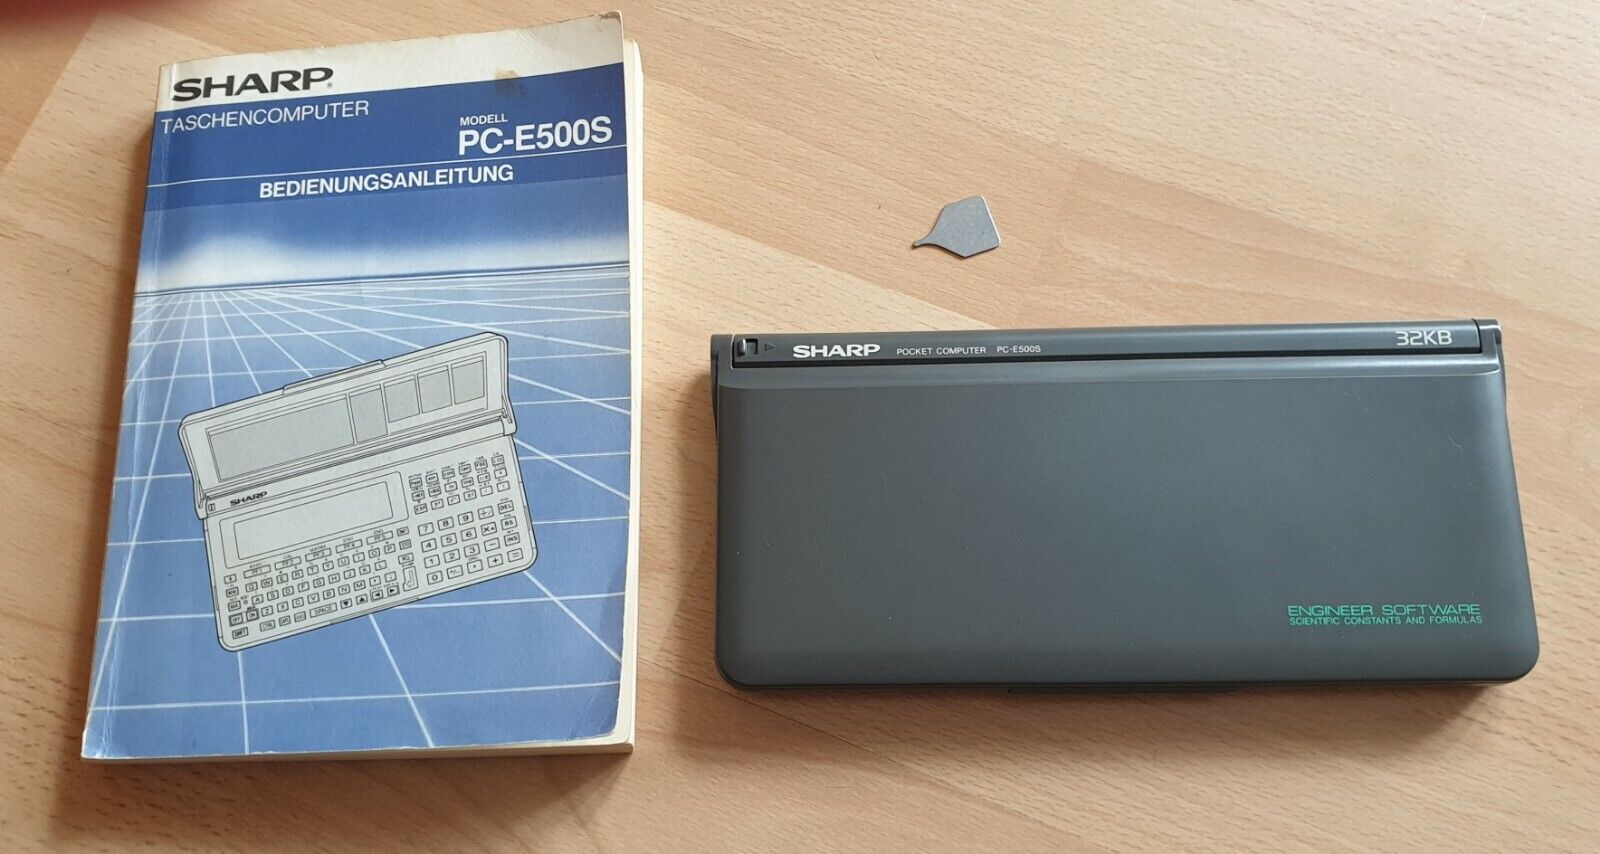 Details zu  SHARP PC-E500S / 32 KB Pocket Computer, BASIC Calculator, Taschenrechner Nachschub im Inland